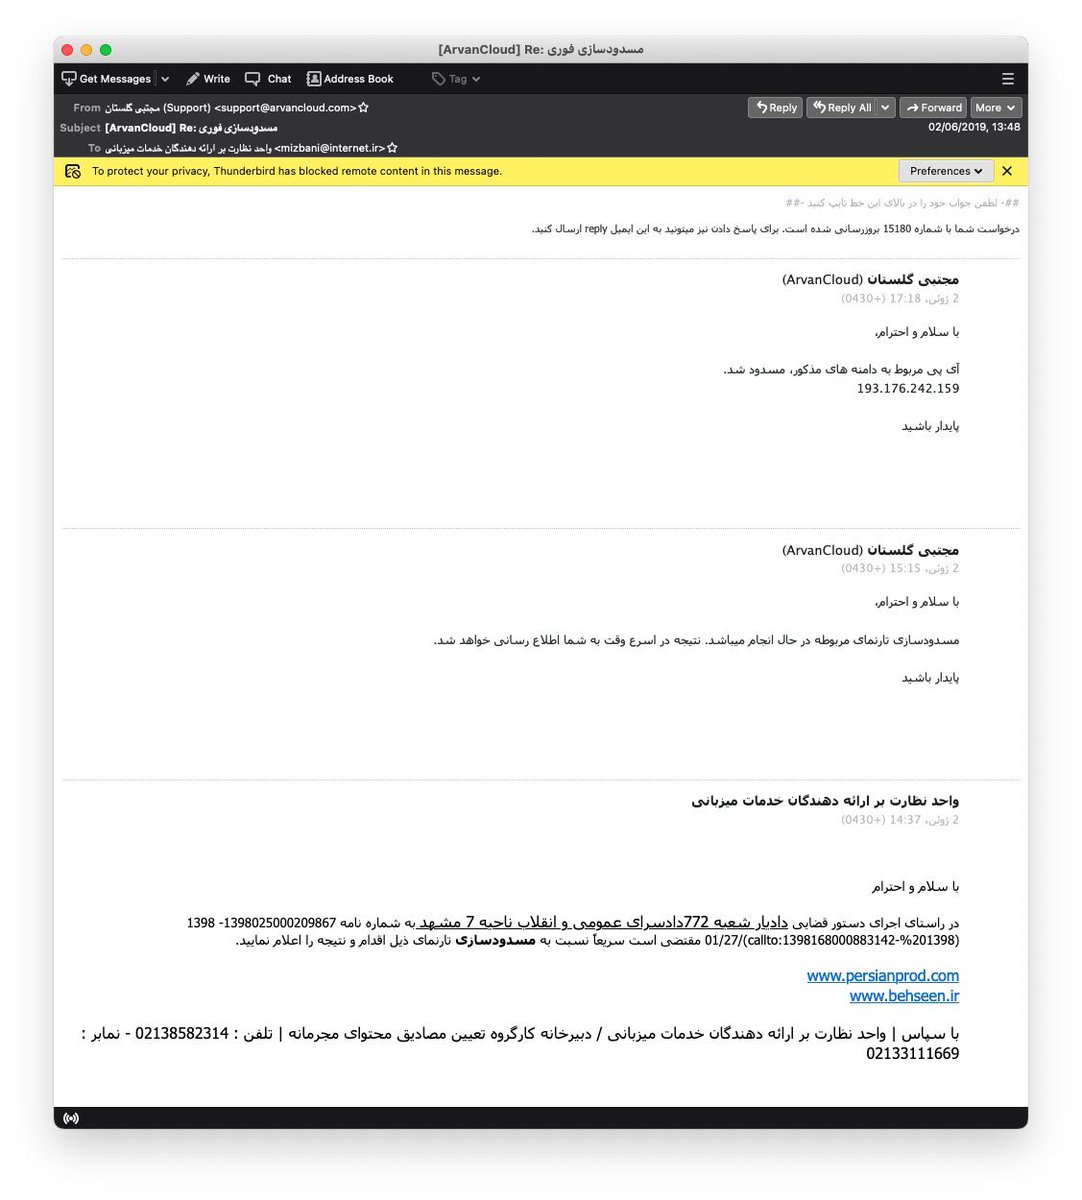 مجتبی گلستان از اعضای ارشد #ابرآروان که همکاریش در سرکوب ثابت شده س.
#CensorshipResistance